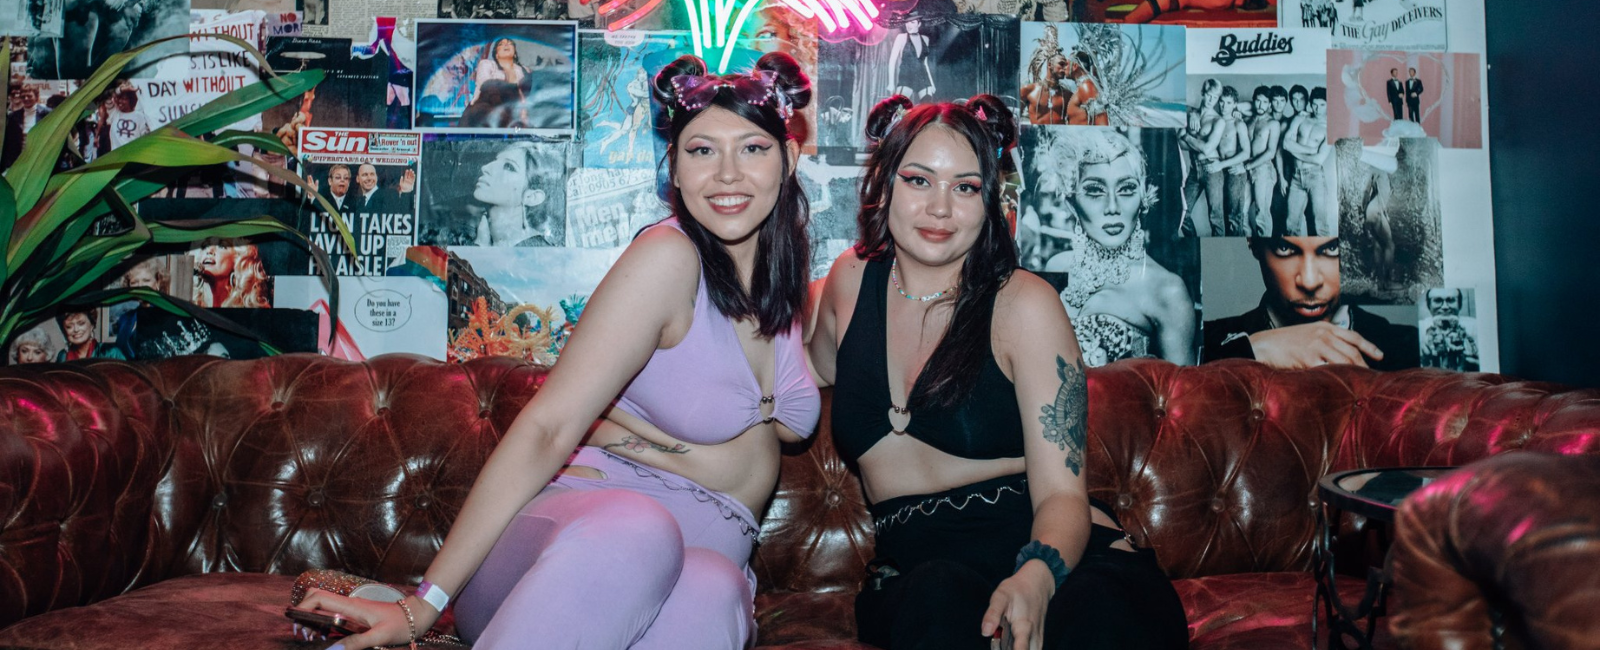 Two women smiling at Big Gay Day Brisbane